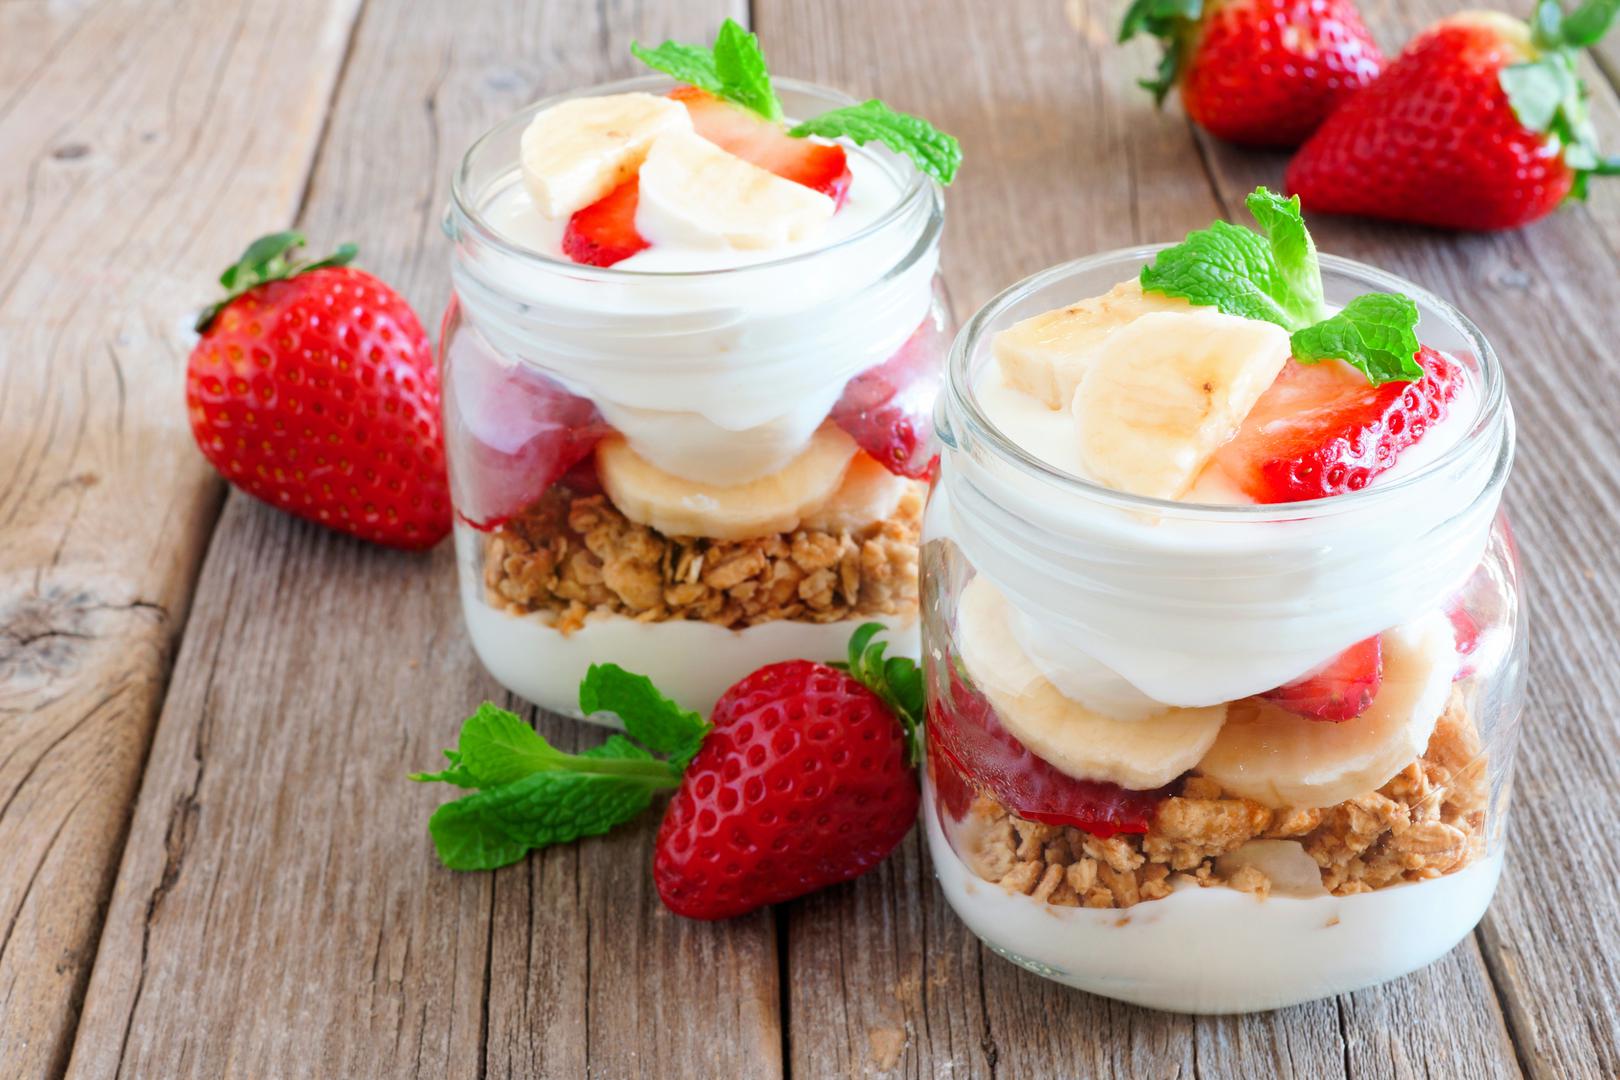 1. Granola s jogurtom - Ovo je savršena kombinacija za one koji pokušavaju izgubiti kilograme. U vašu omiljenu zdjelu prvo stavite grčki jogurt koji je prepun proteina, zatrpajte ga šakom granole, a zatim pospite cimetom. 